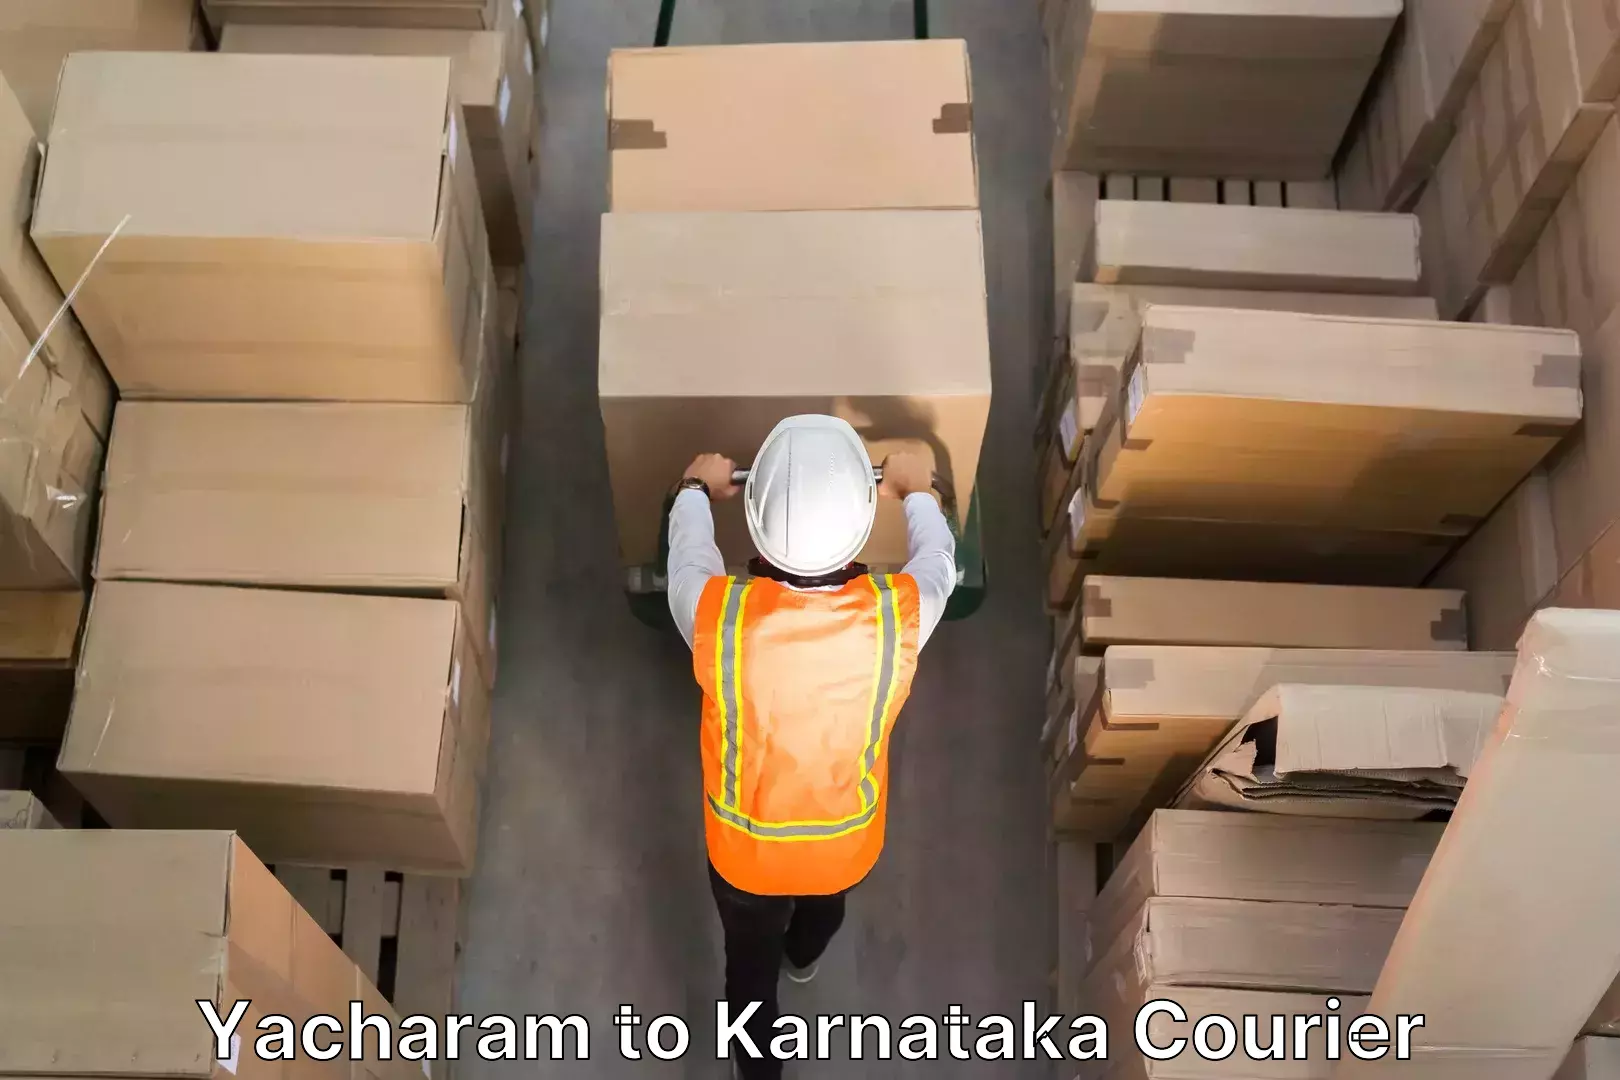 Professional moving assistance Yacharam to Karnataka